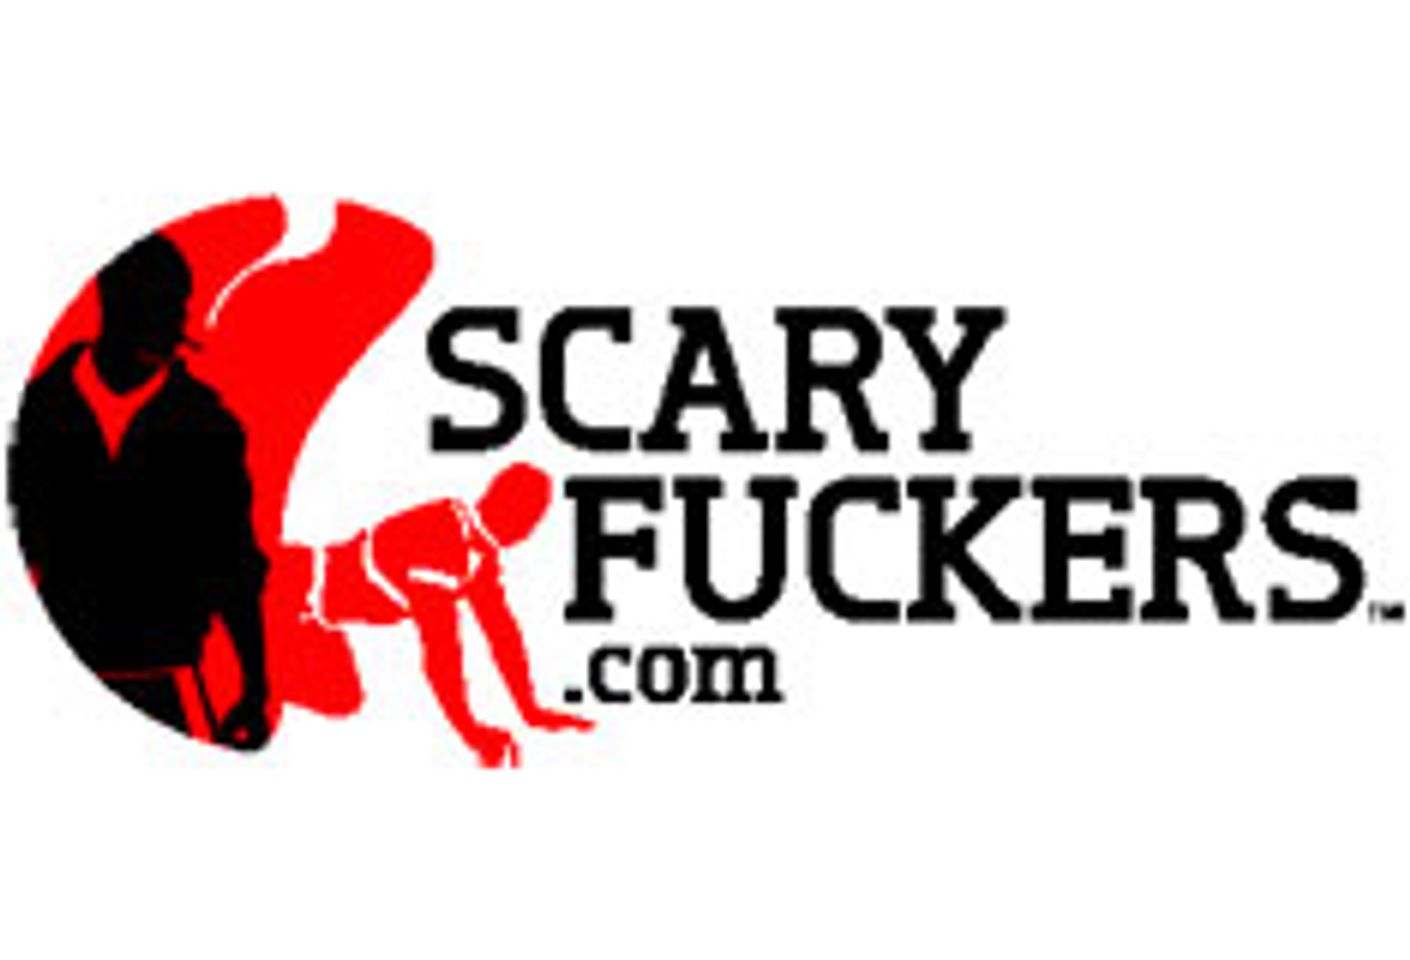 Next Door Entertainment Launches ScaryFuckers.com